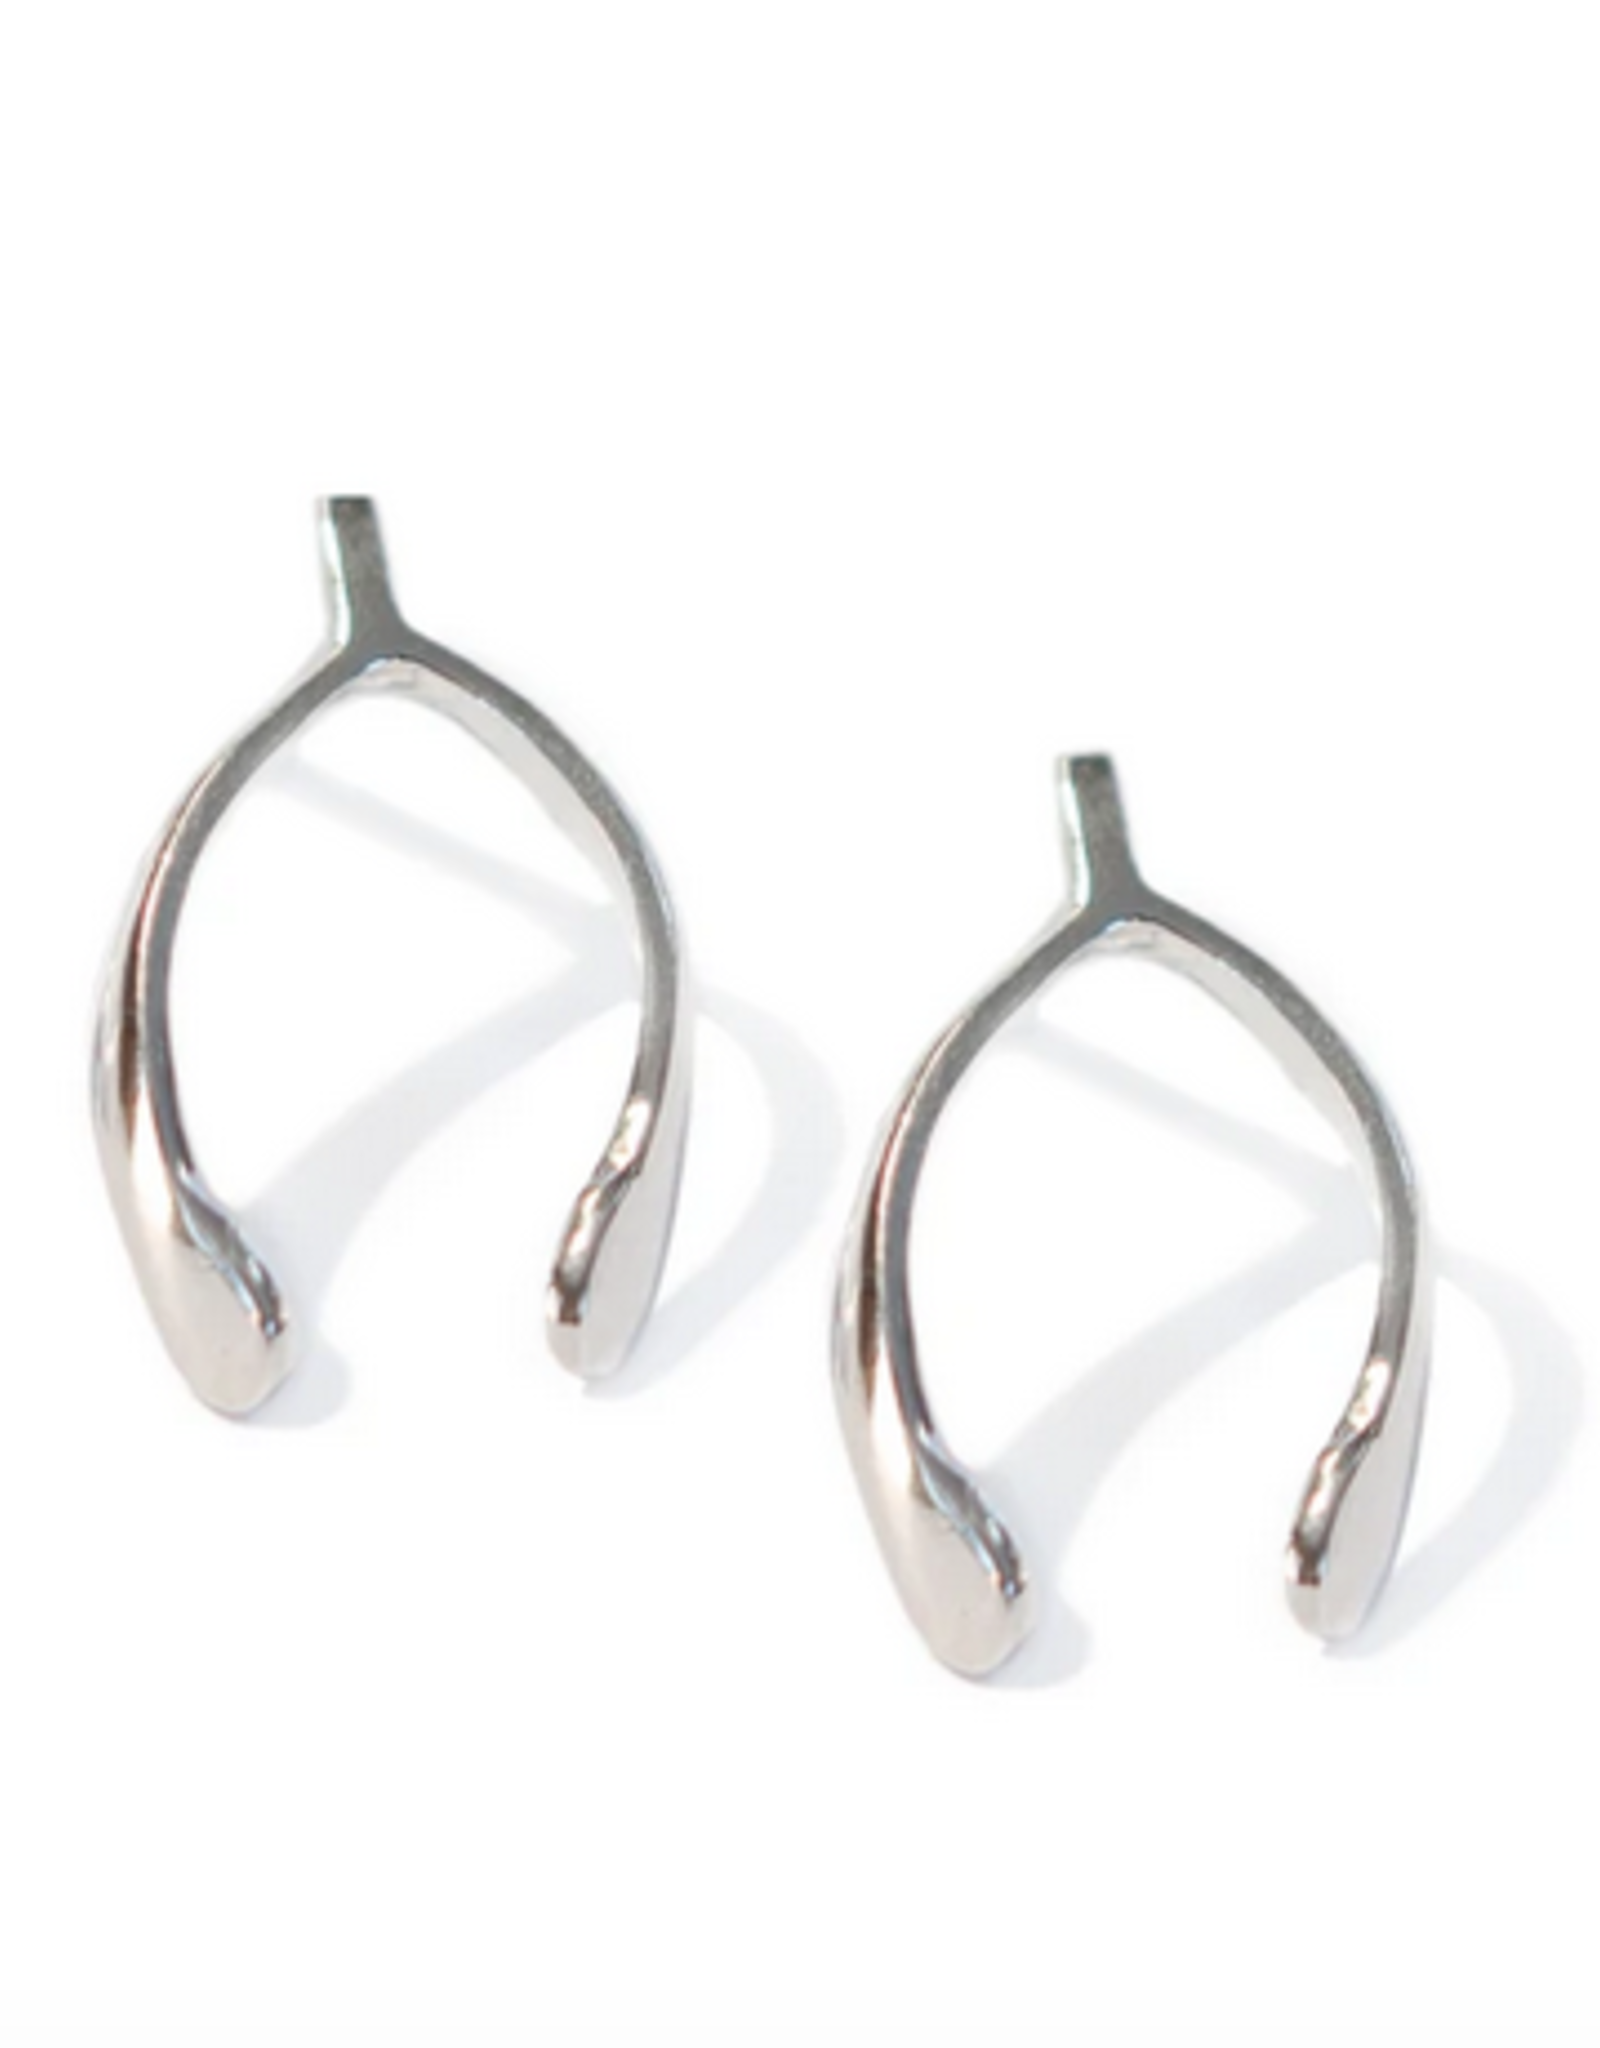 Sterling Silver Wishbone Stud Earring 17mm long